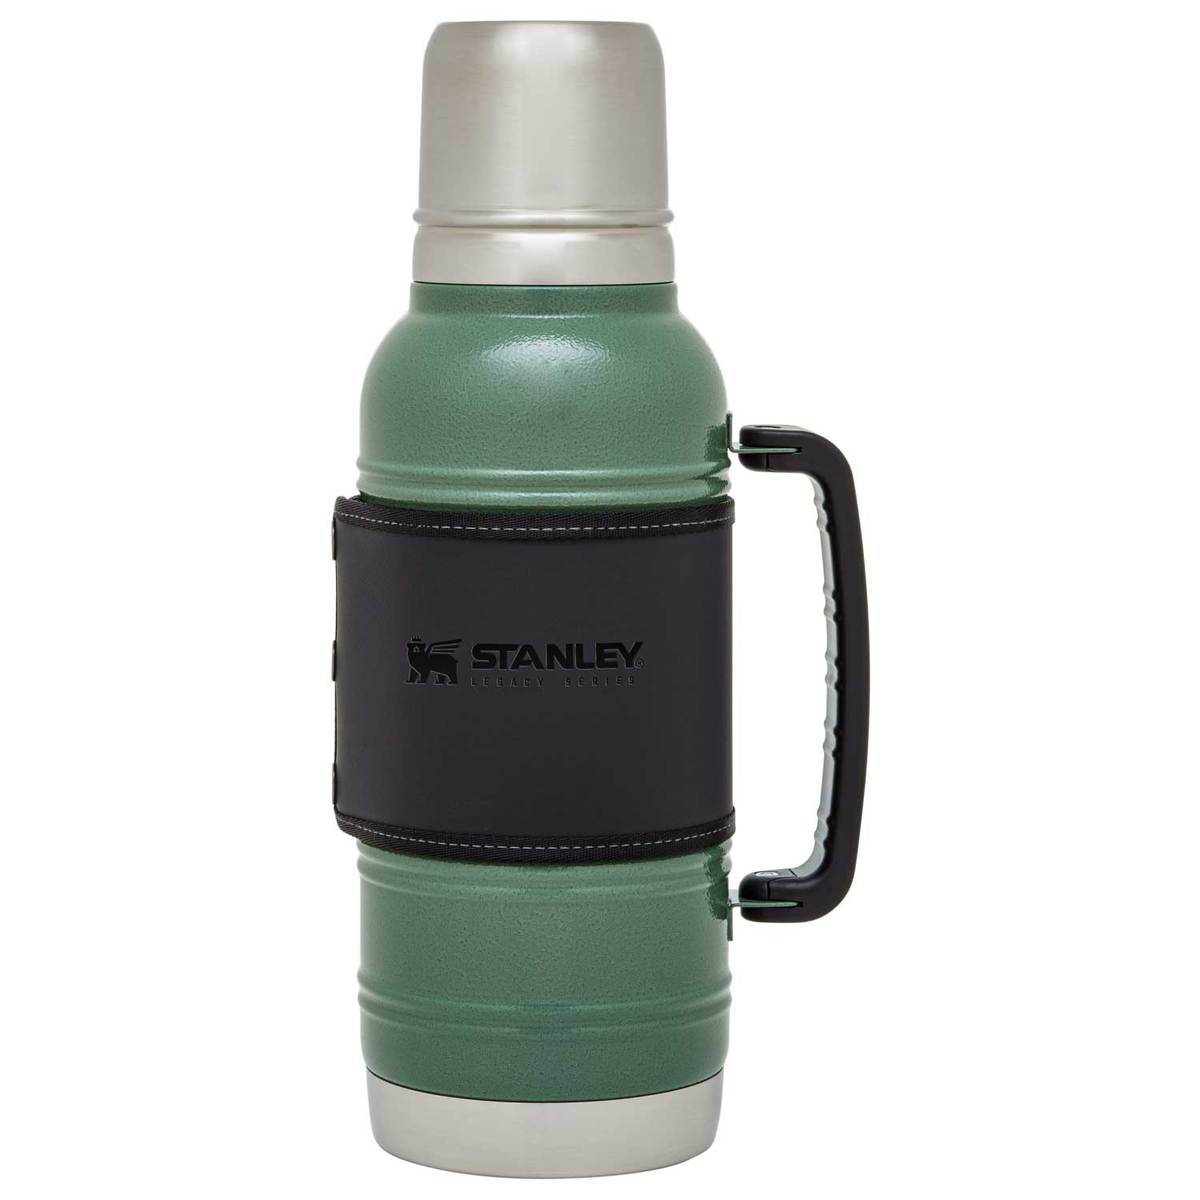 https://www.sportsmans.com/medias/stanley-legacy-quadvac-thermal-bottle-15qt-hammertone-green-1681989-1.jpg?context=bWFzdGVyfGltYWdlc3w1MDUzNXxpbWFnZS9qcGVnfGltYWdlcy9oNzIvaDgyLzk2NDQ4ODM4Njk3MjYuanBnfDgxNWYzMDBjZTI2ZDNhYzRiZjU1NzVjYjYxZjgwMDNhMTc3Zjc3MzkzYzI5ZWMyZTZkNDY1MThlNzU4NGJkMWM